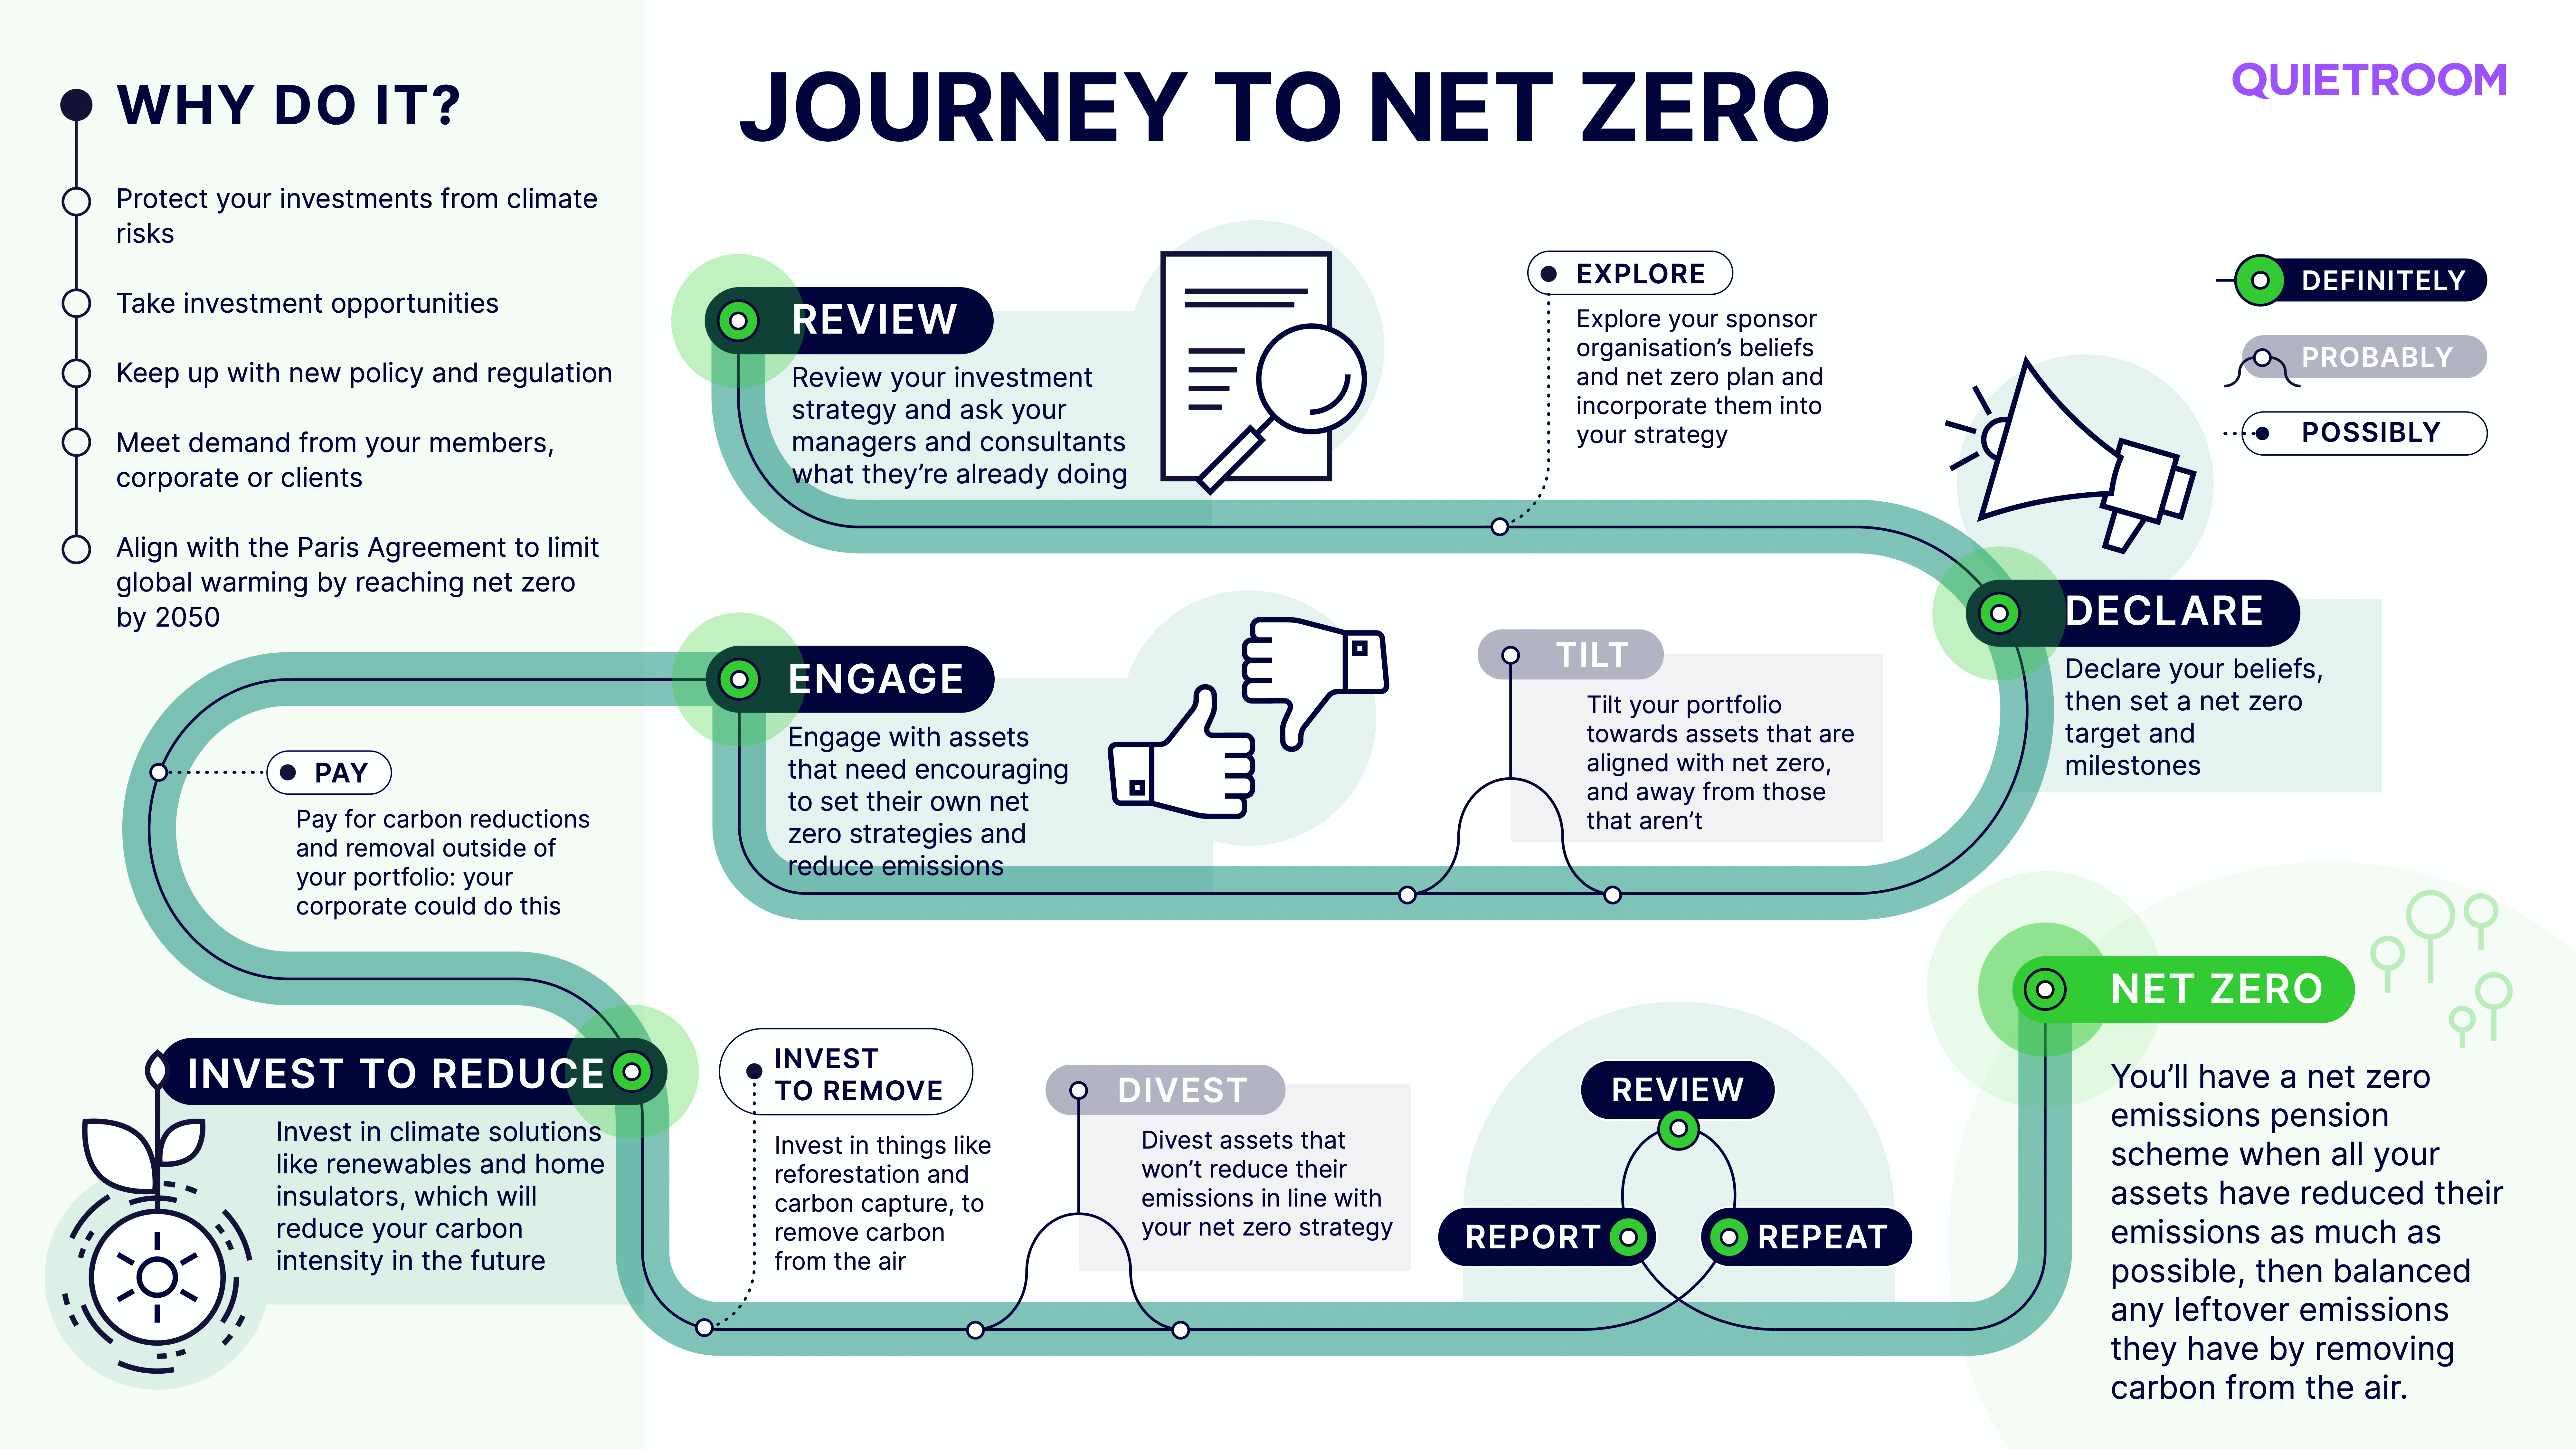 Journey to net zero infographic by Quietroom